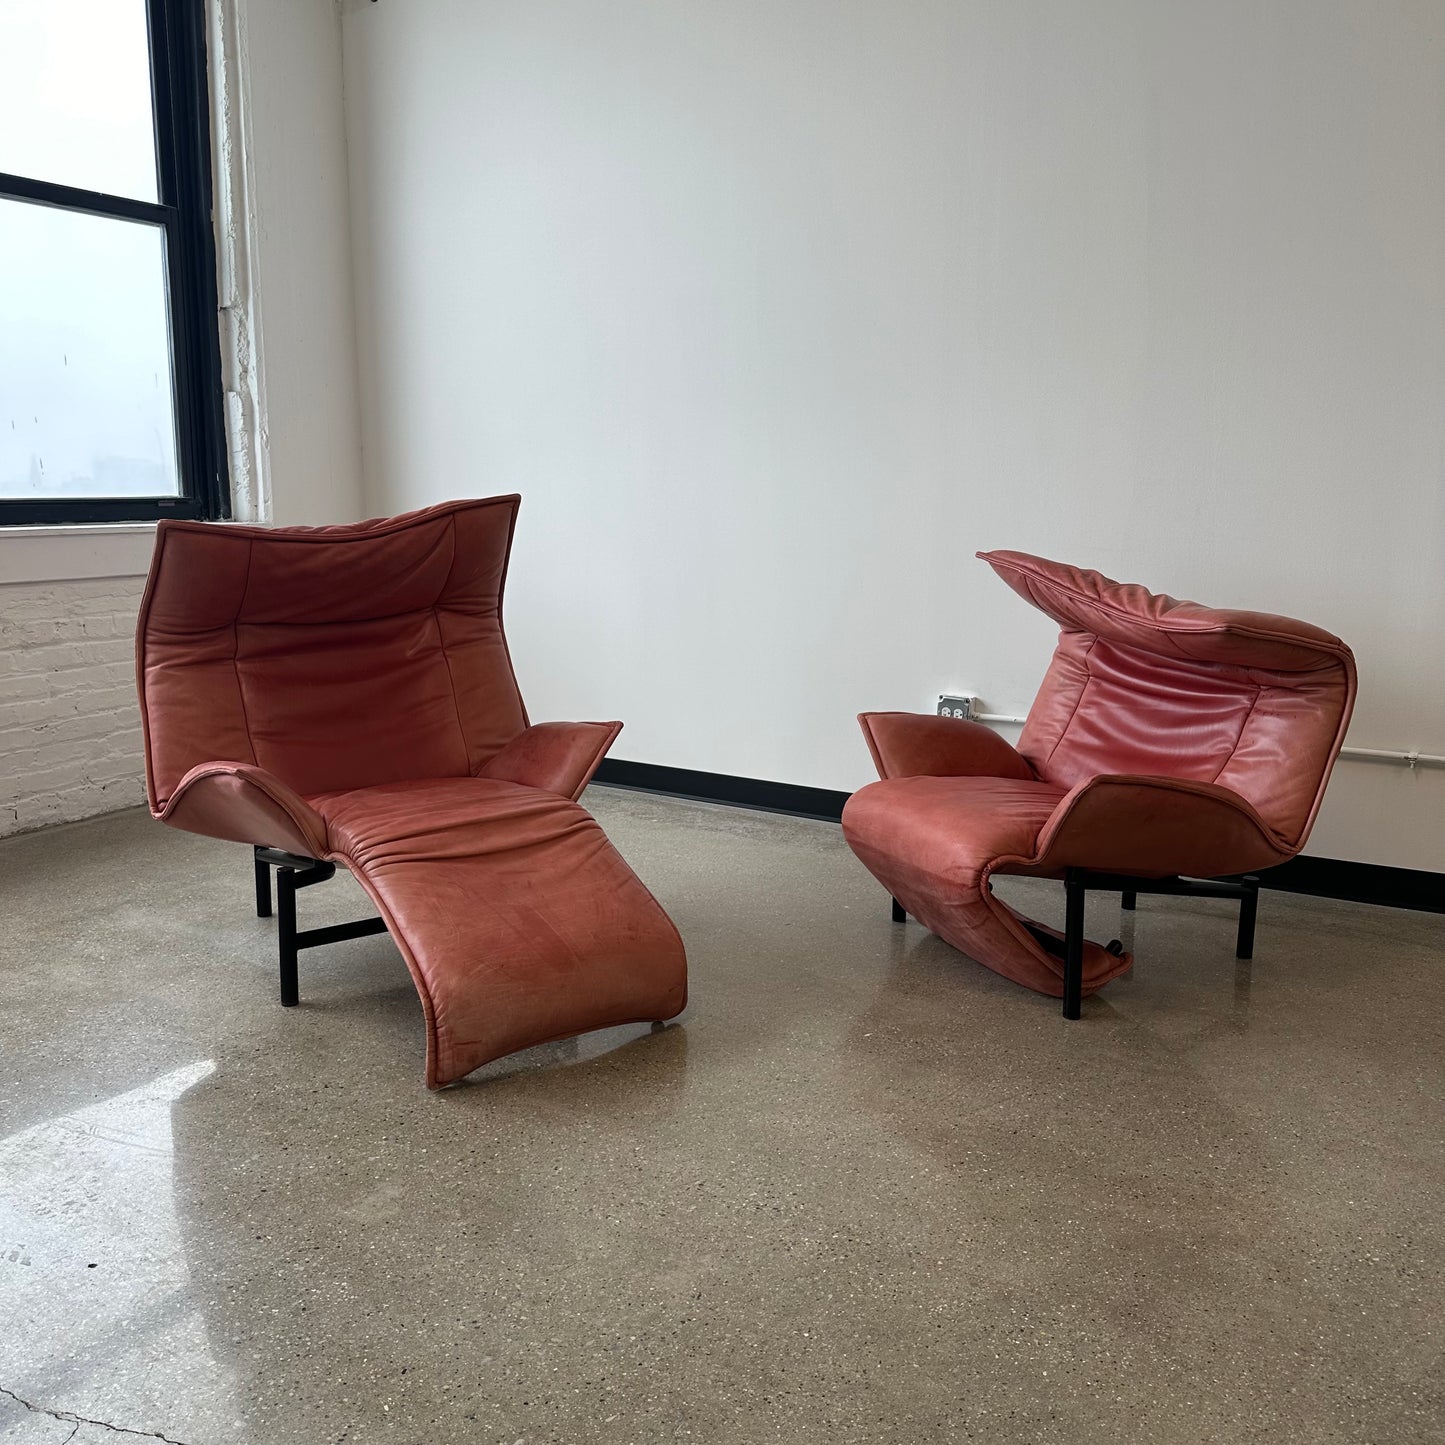 Vico Magistretti “Veranda” Chairs, a pair